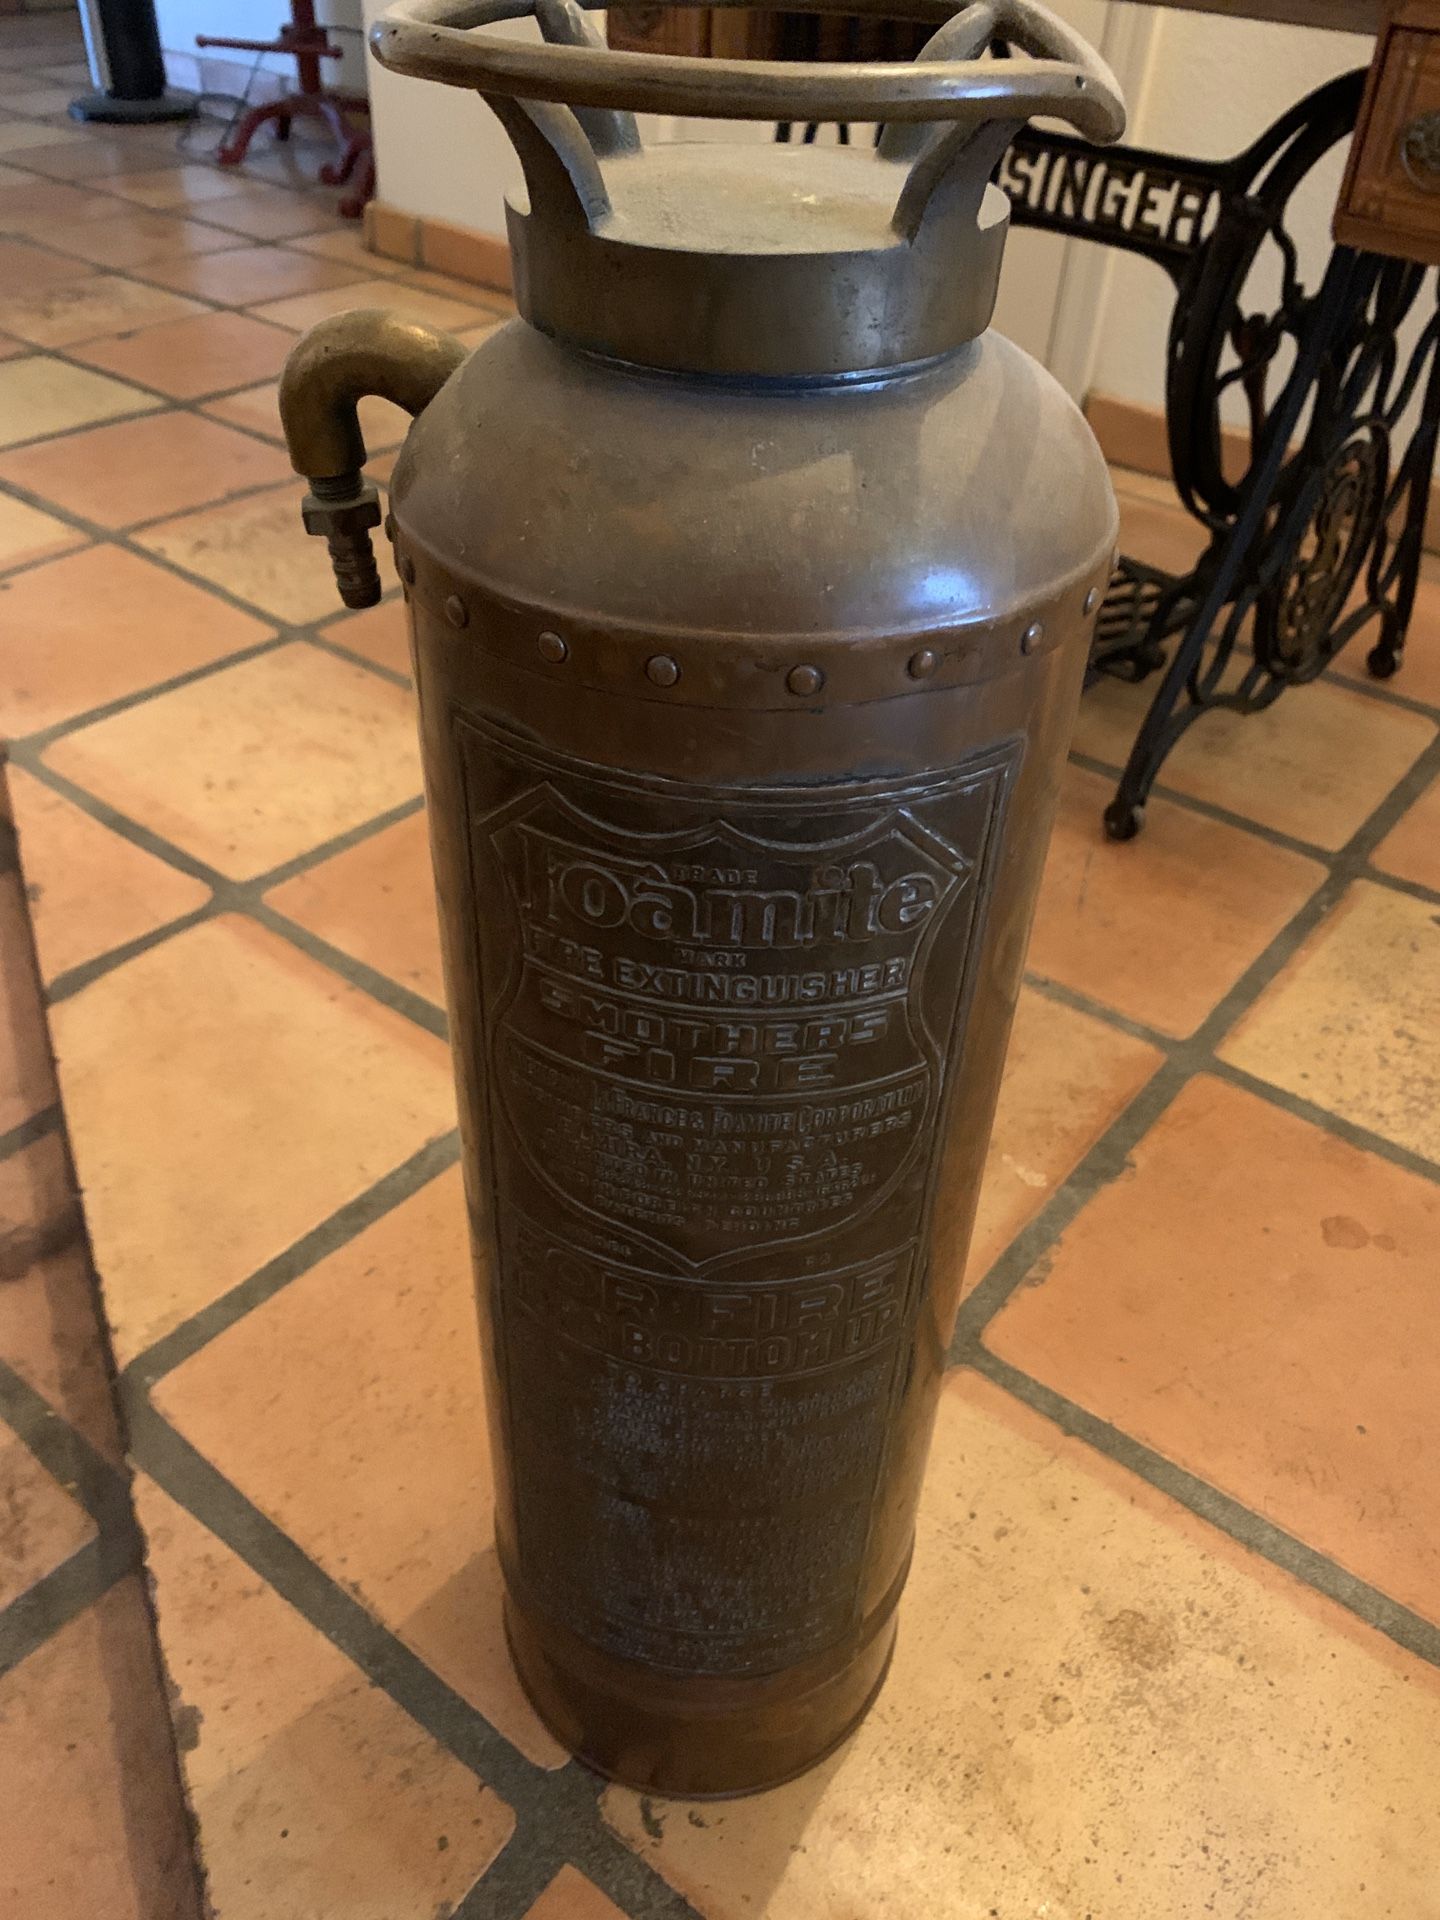 Vintage Fire Extinguisher